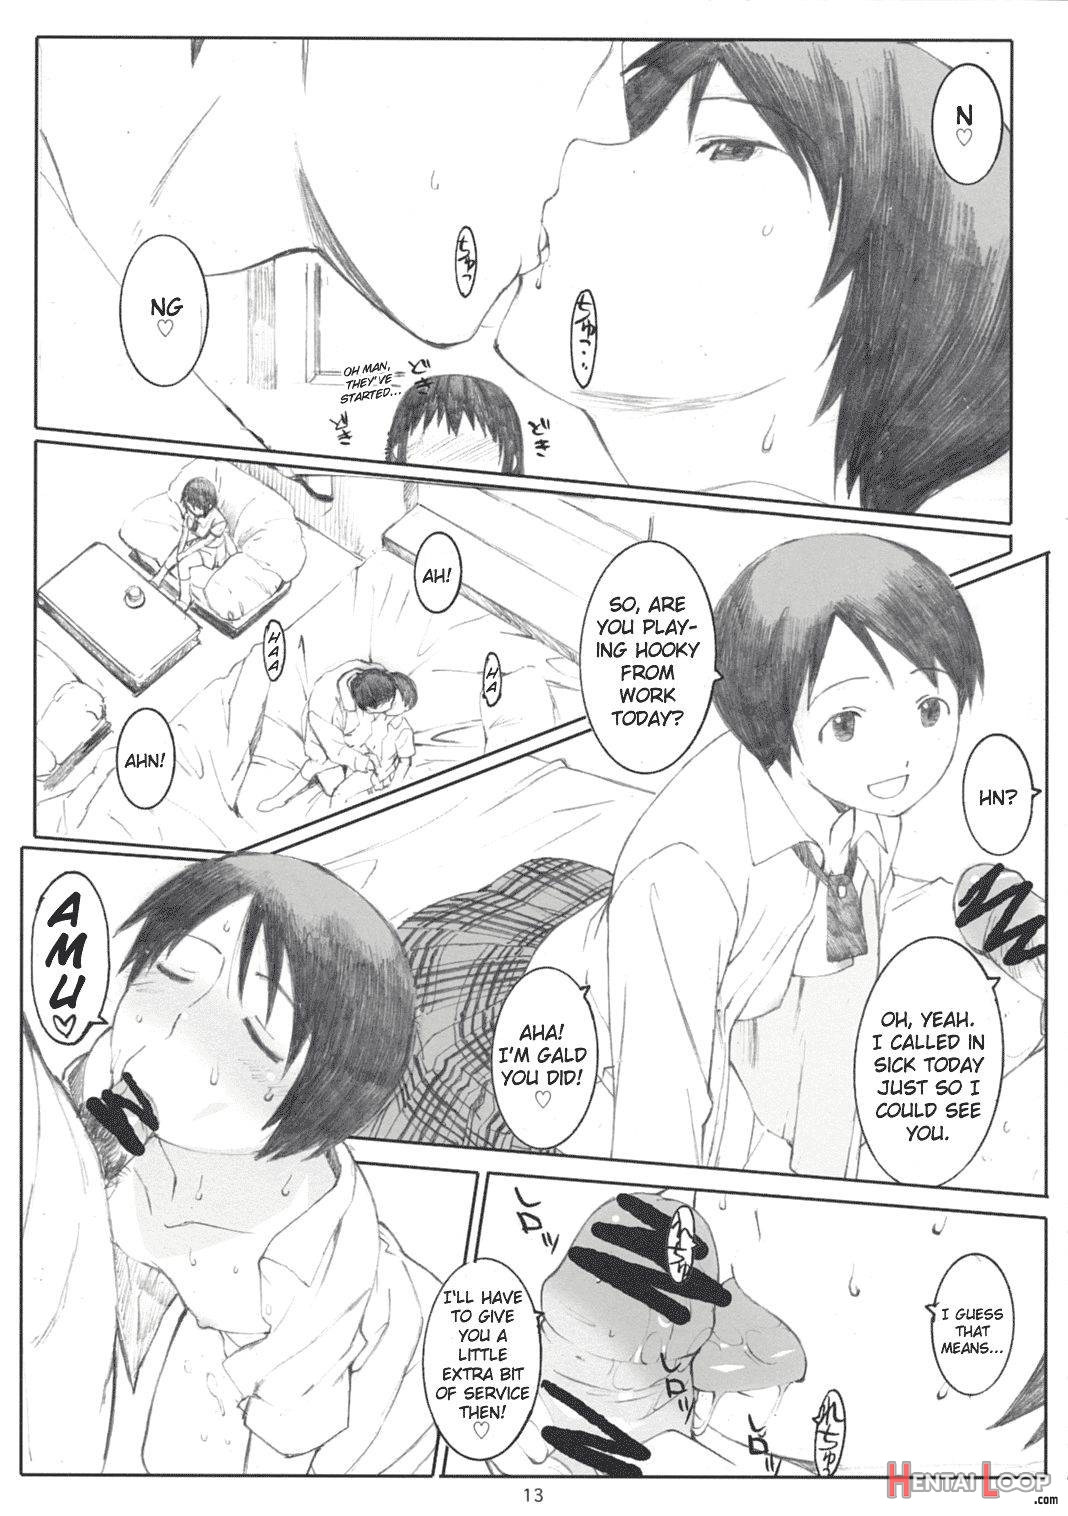 Natsukaze! 2 page 12